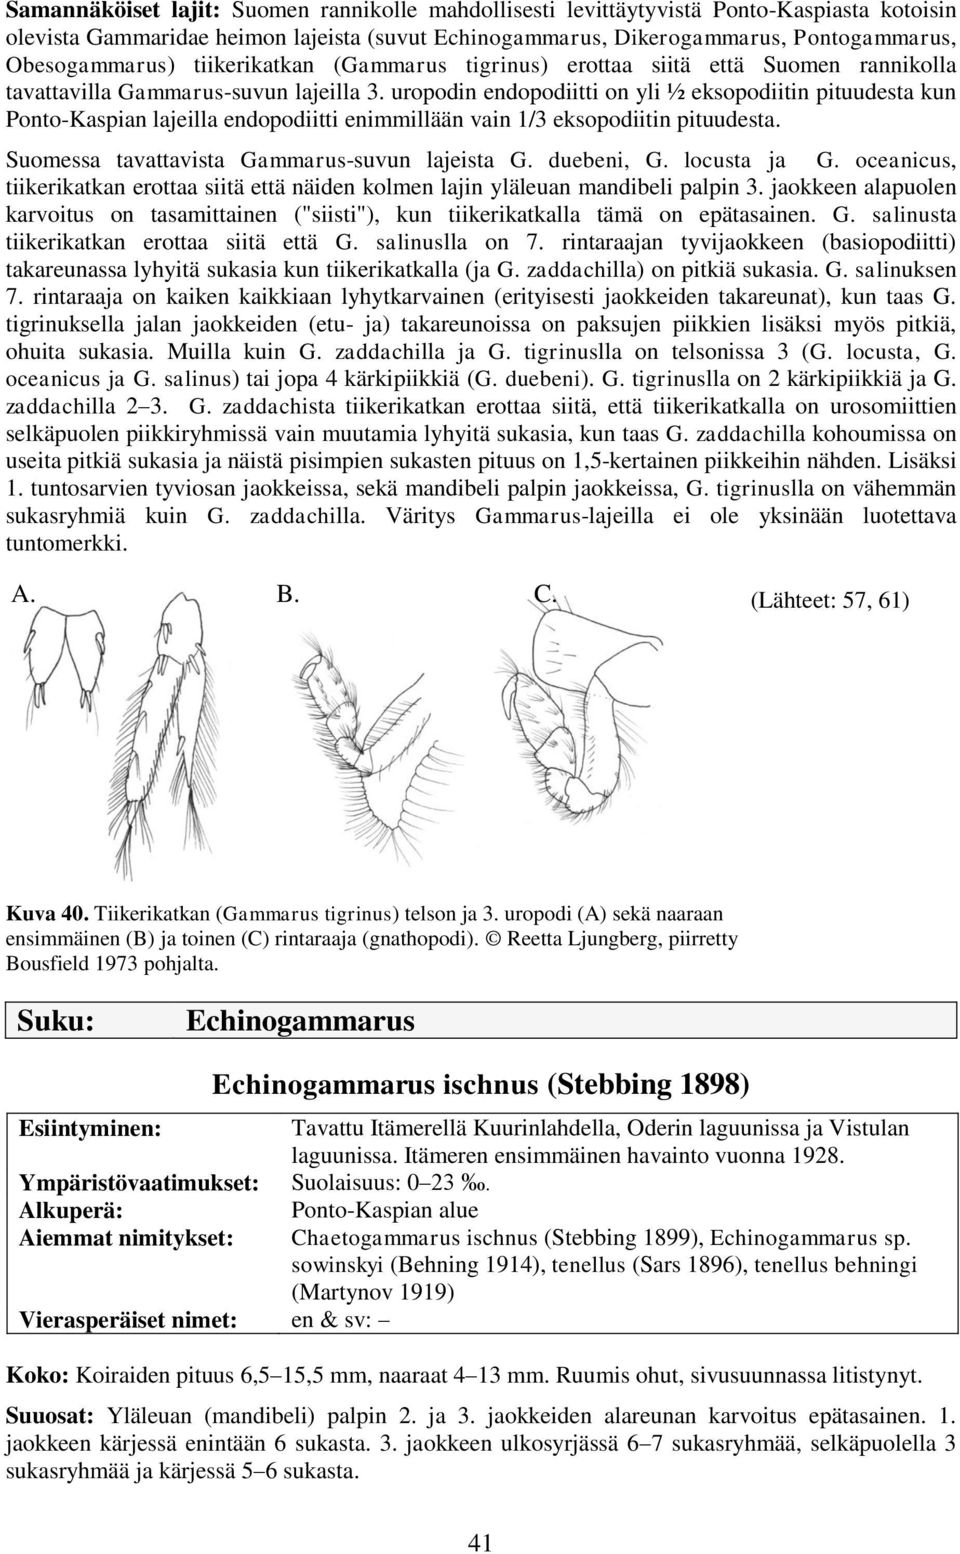 uropodin endopodiitti on yli ½ eksopodiitin pituudesta kun Ponto-Kaspian lajeilla endopodiitti enimmillään vain 1/3 eksopodiitin pituudesta. Suomessa tavattavista Gammarus-suvun lajeista G.